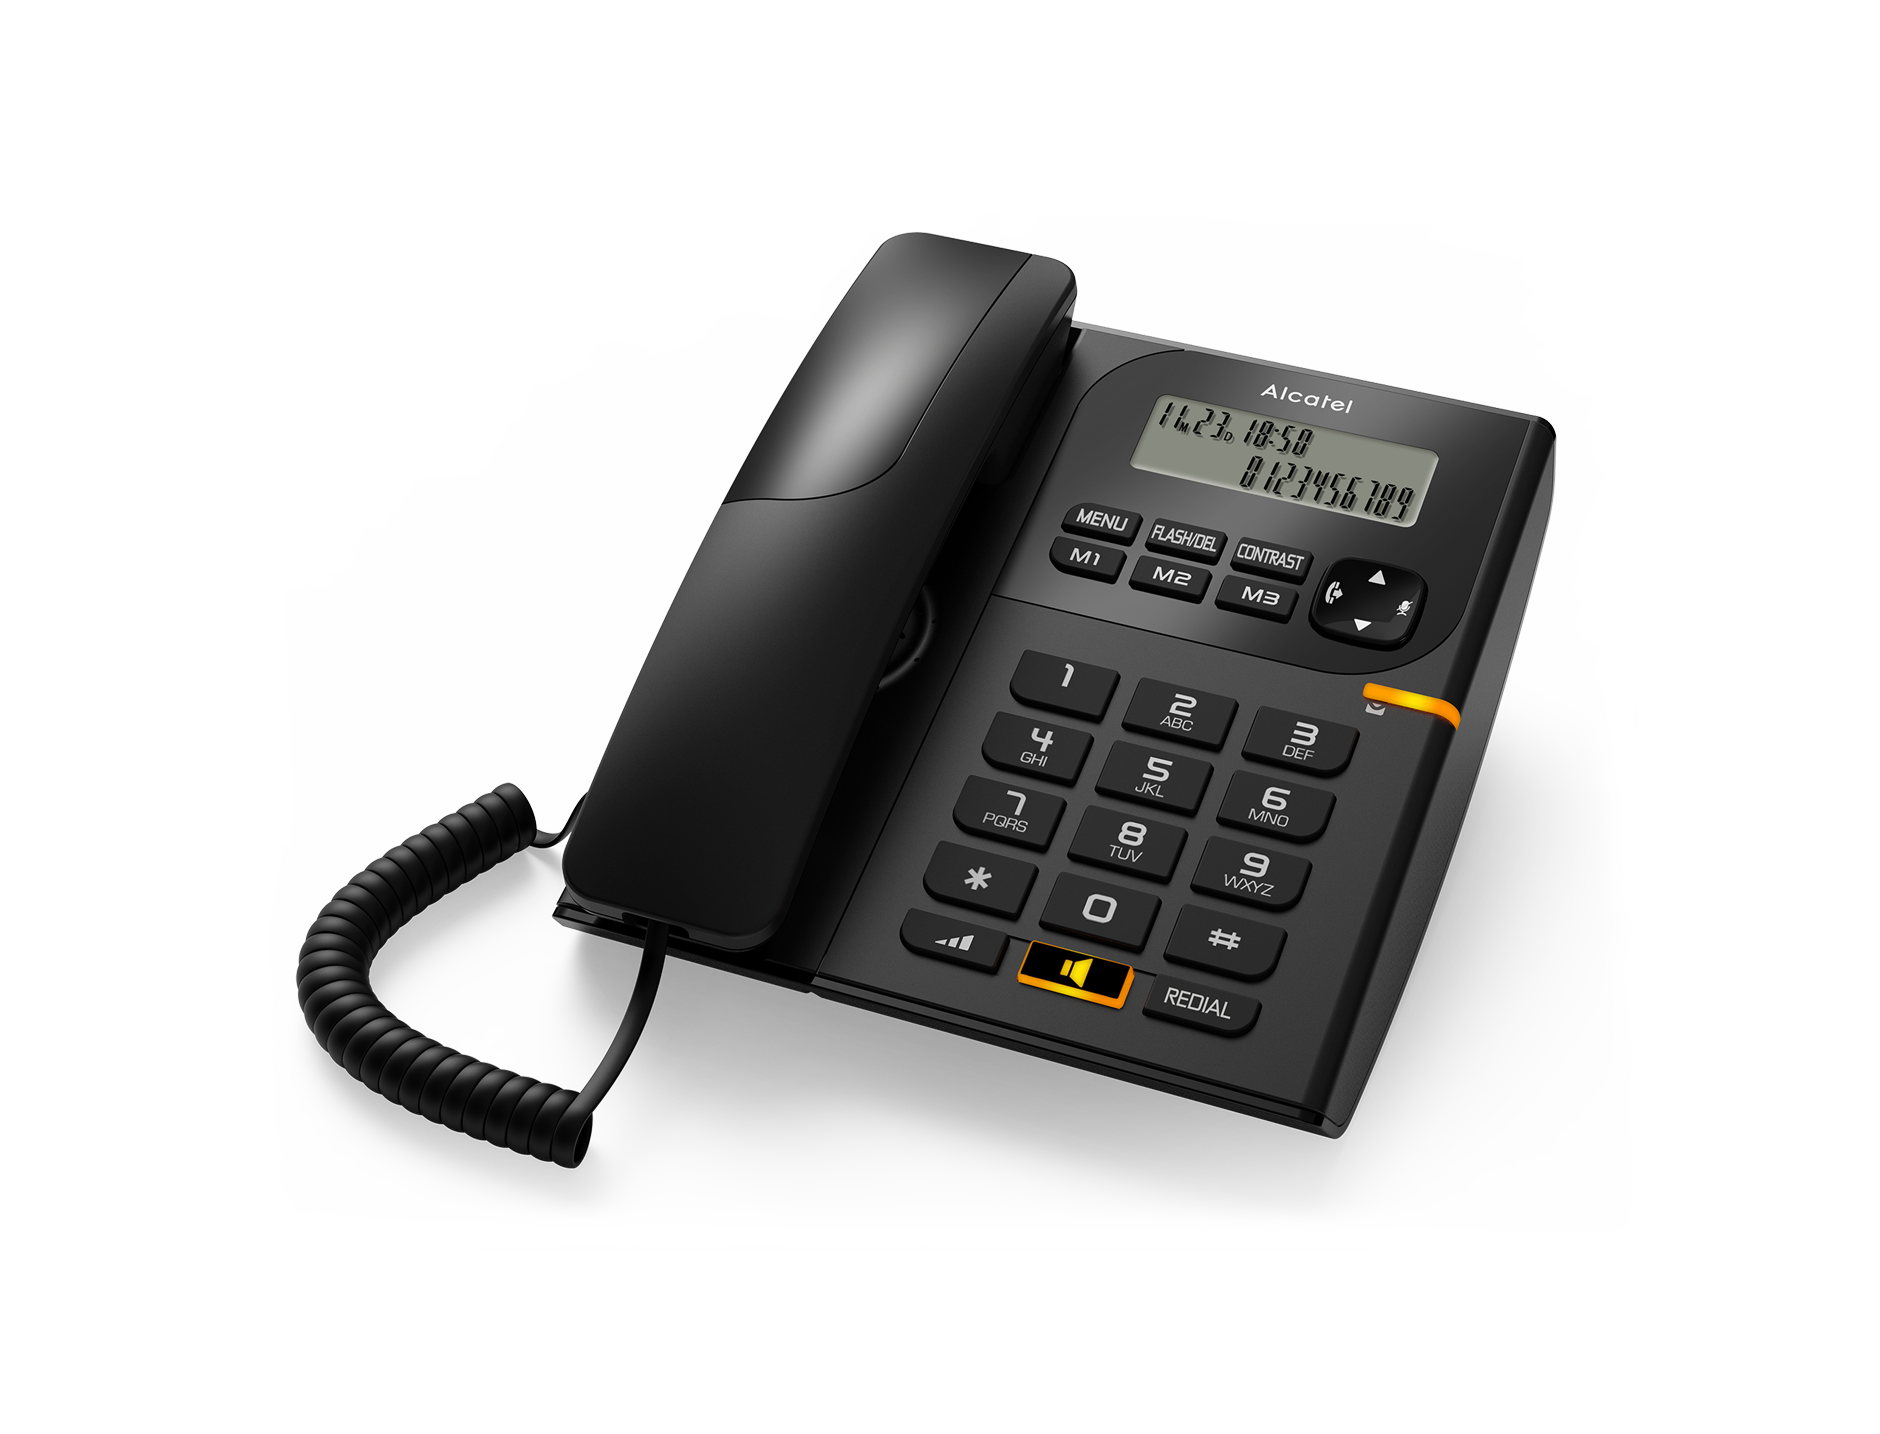 Teléfono Sobremesa Alcatel T58 Black